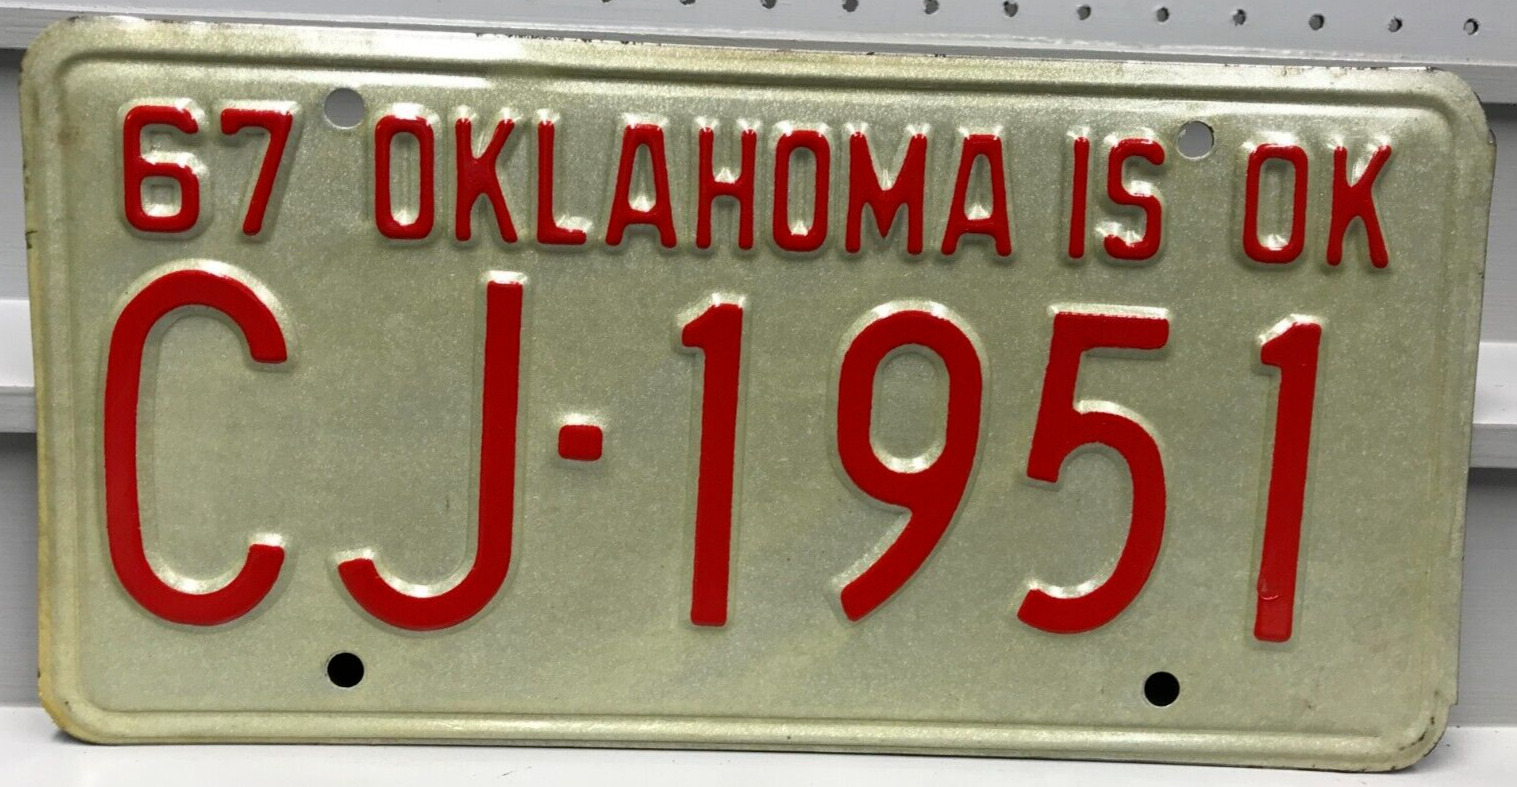 1967 Oklahoma License Plate CJ-1951